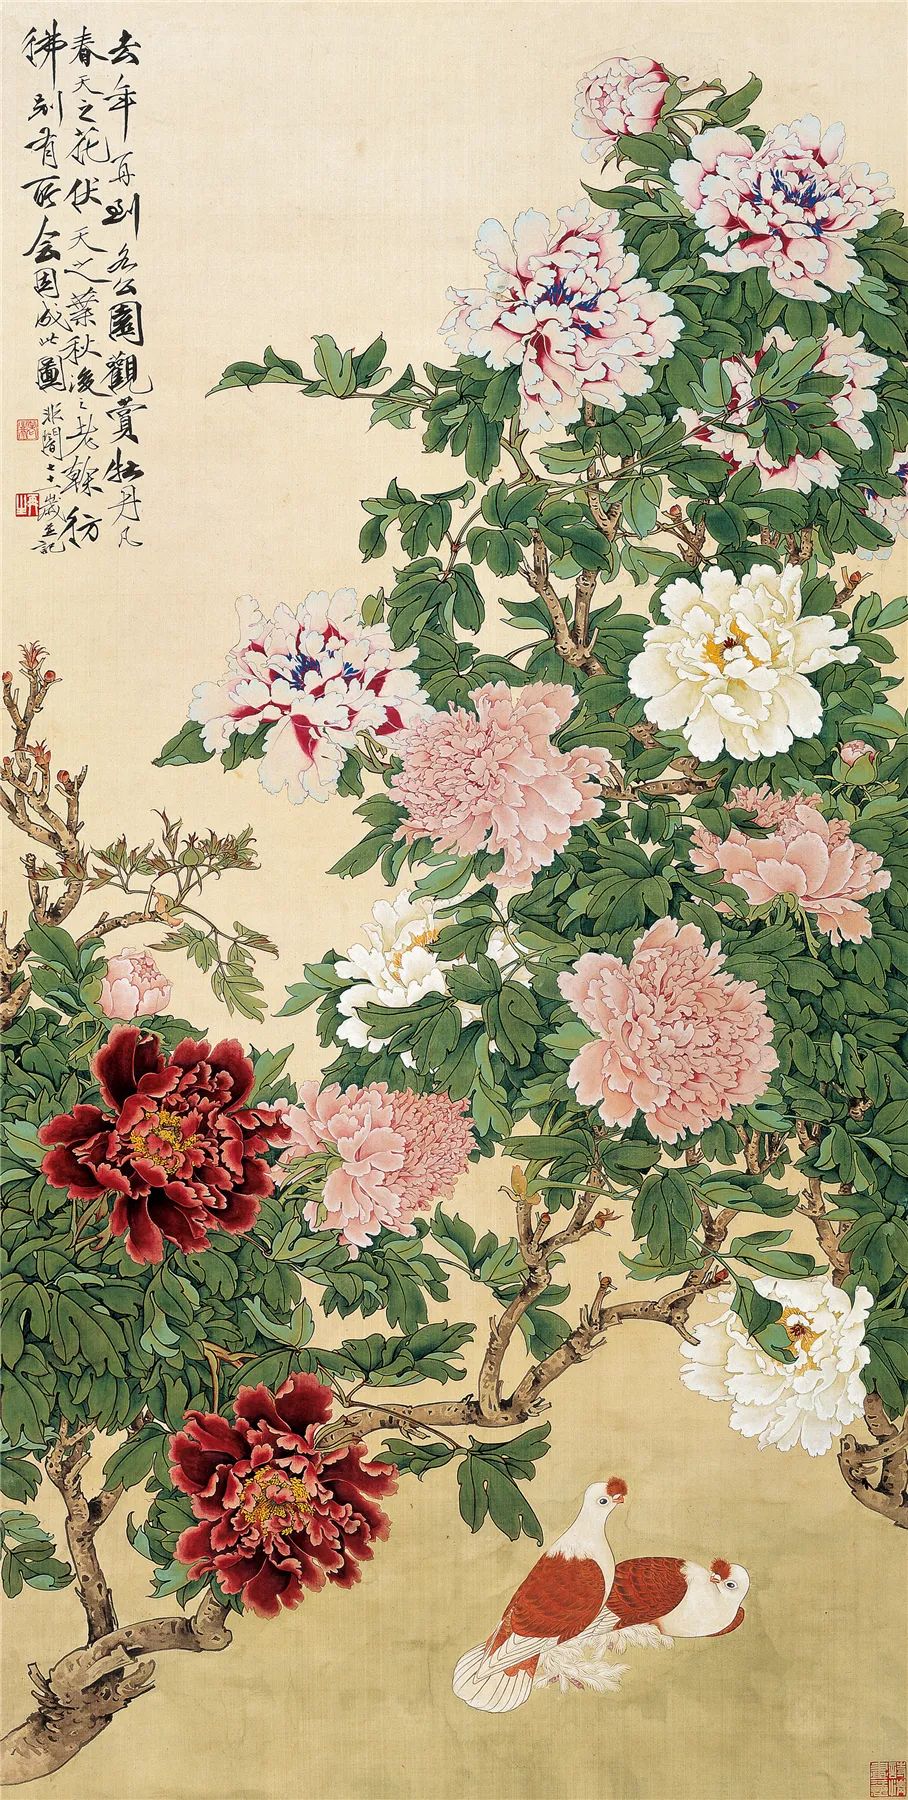 牡丹雙鴿圖 于非闇 162×81.5cm 絹本設色 北京畫院藏 1959